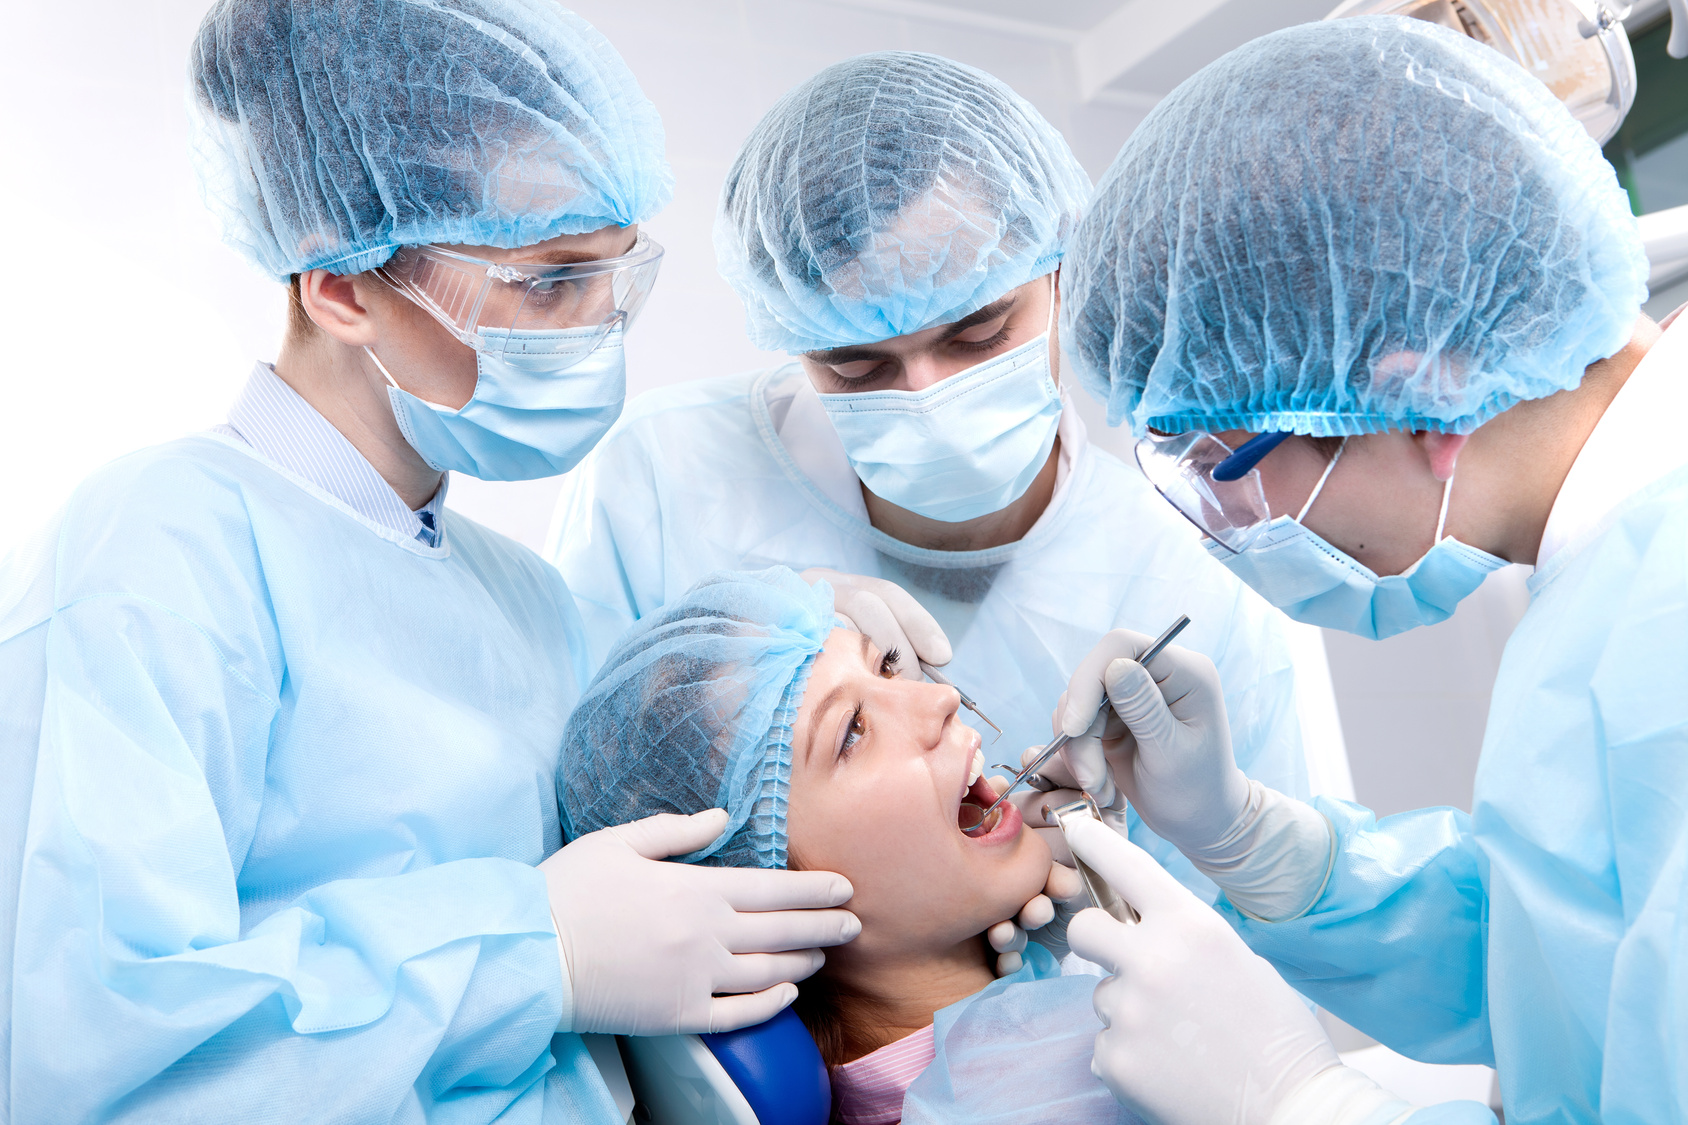 Oral and Maxillofacial Surgery in Iran